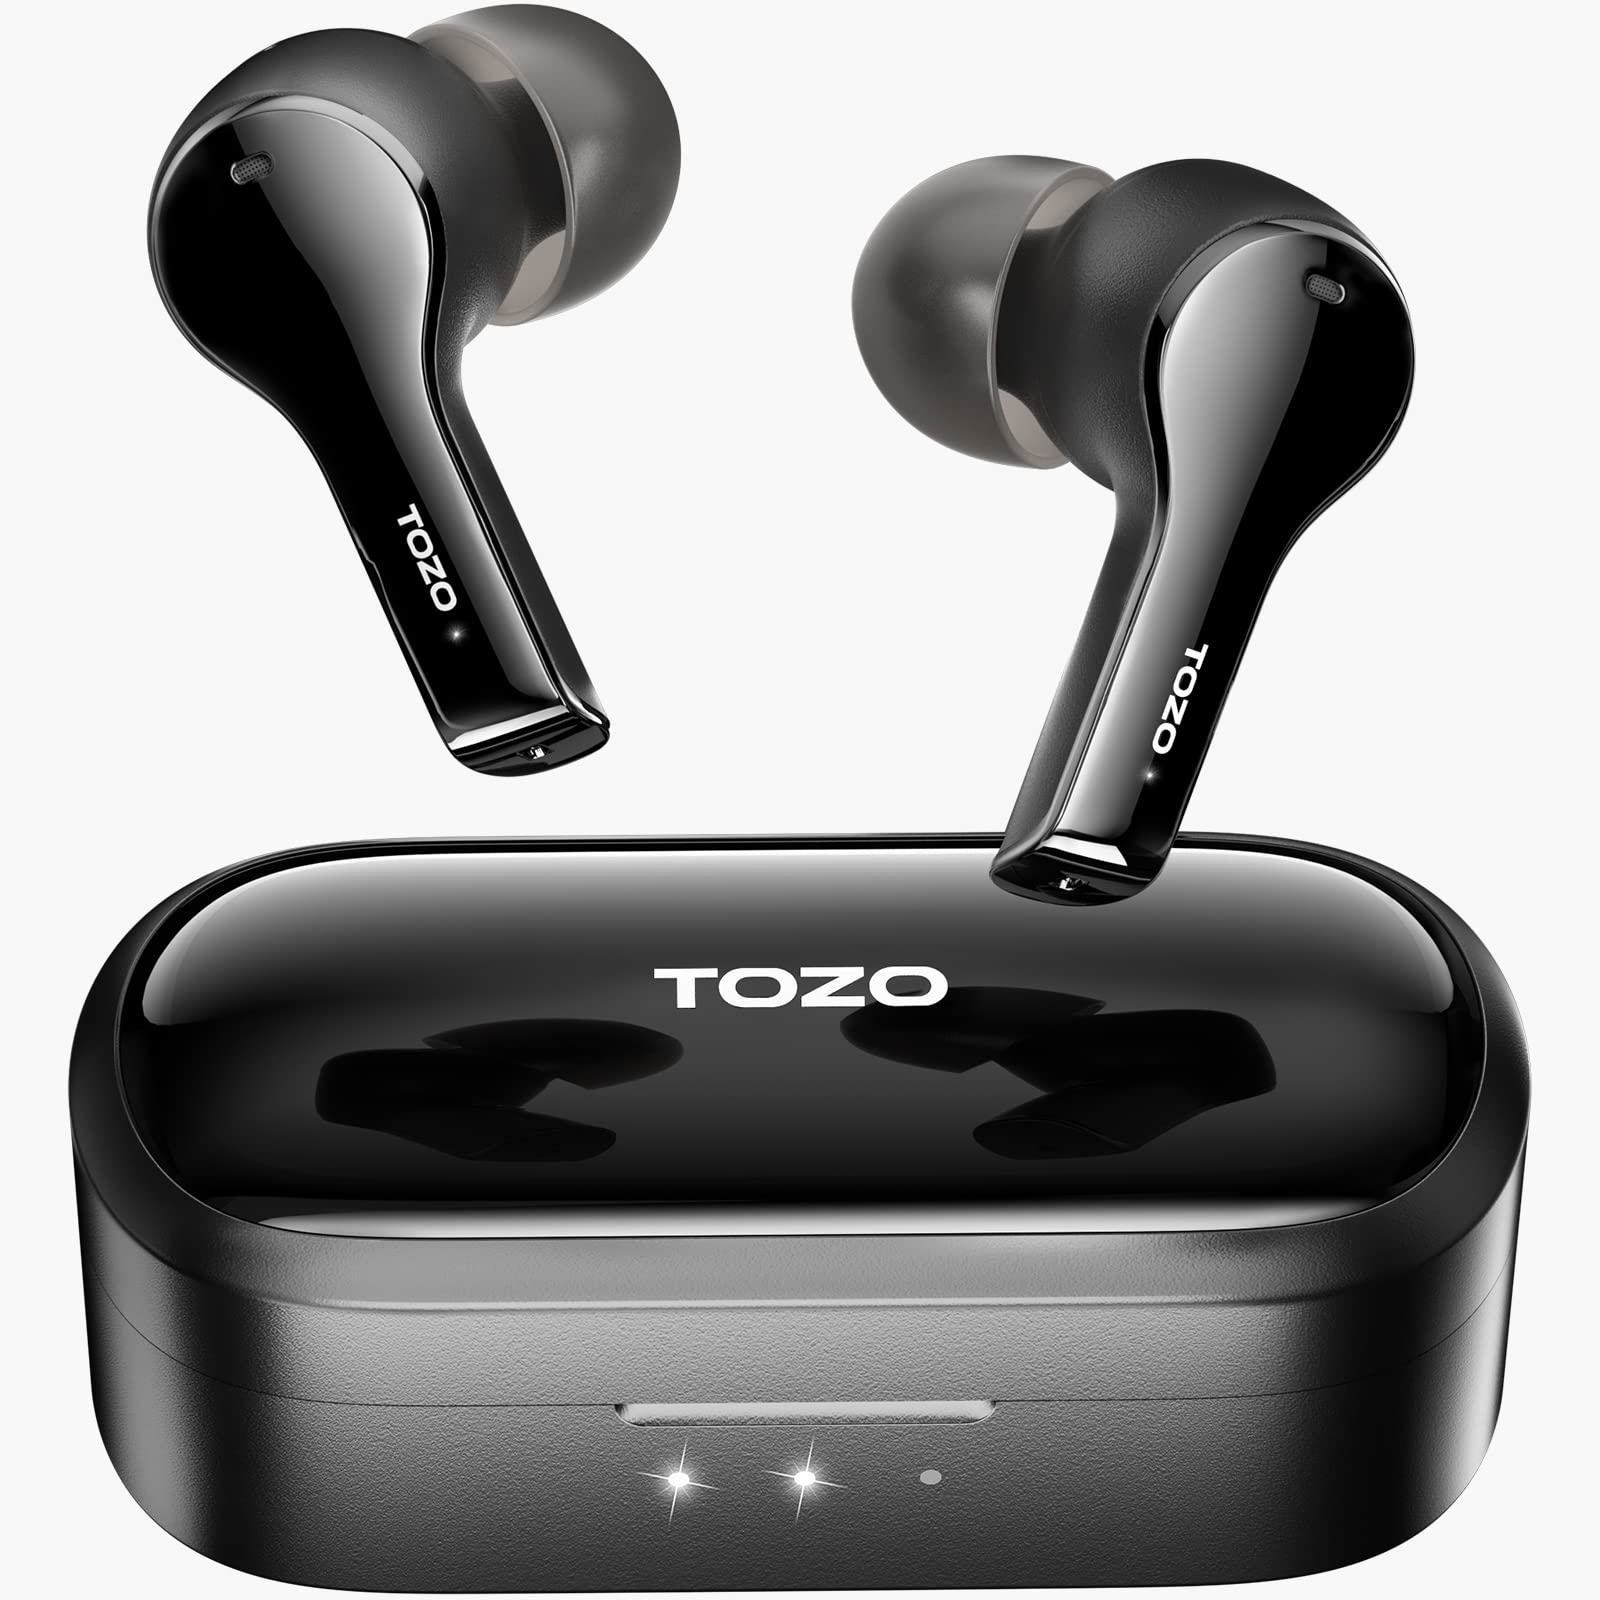  TOZO Fones de ouvido sem fio T9 True com cancelamento de ruído ambiental Fones de ouvido com cancelamento de ruído de 4 microfones Graves profundos Bluetooth 5.3 Leve Estojo de carregamento sem fio...